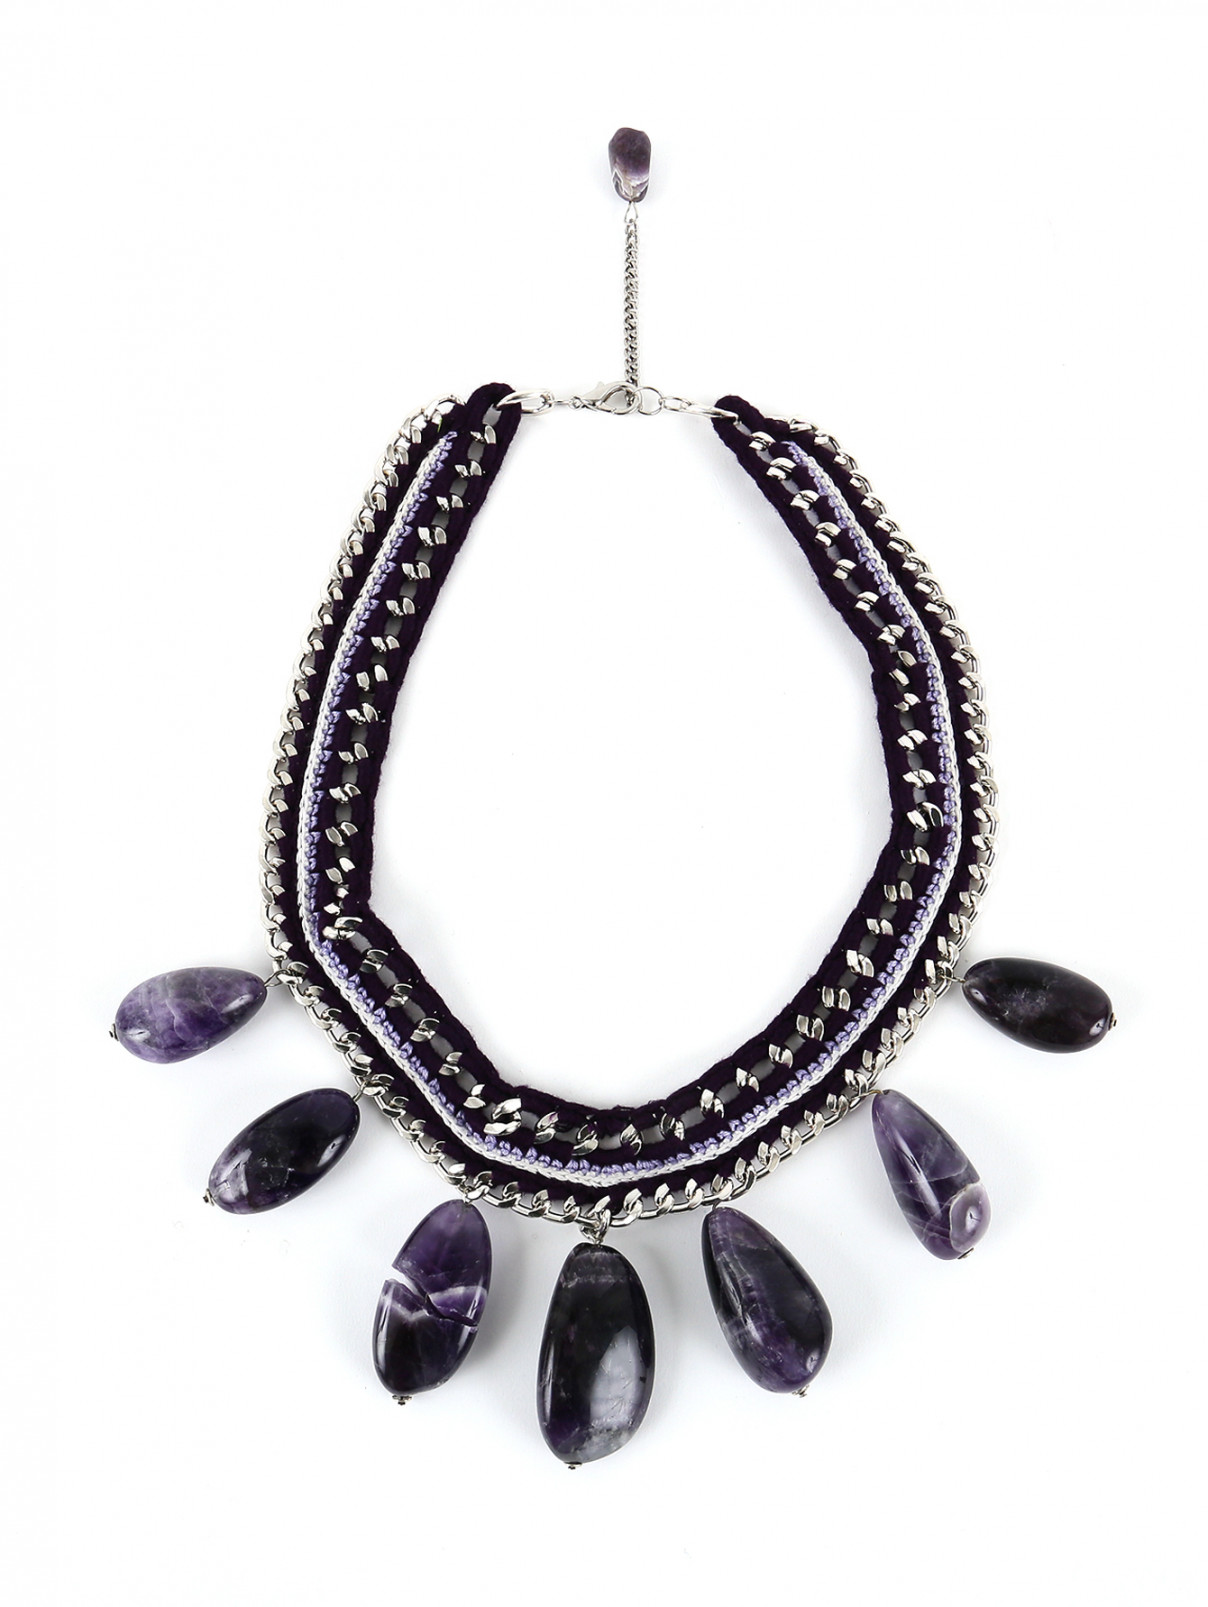 Ожерелье из текстиля и металла декорированное камнями Inga Kazumyan  –  Общий вид  – Цвет:  Фиолетовый